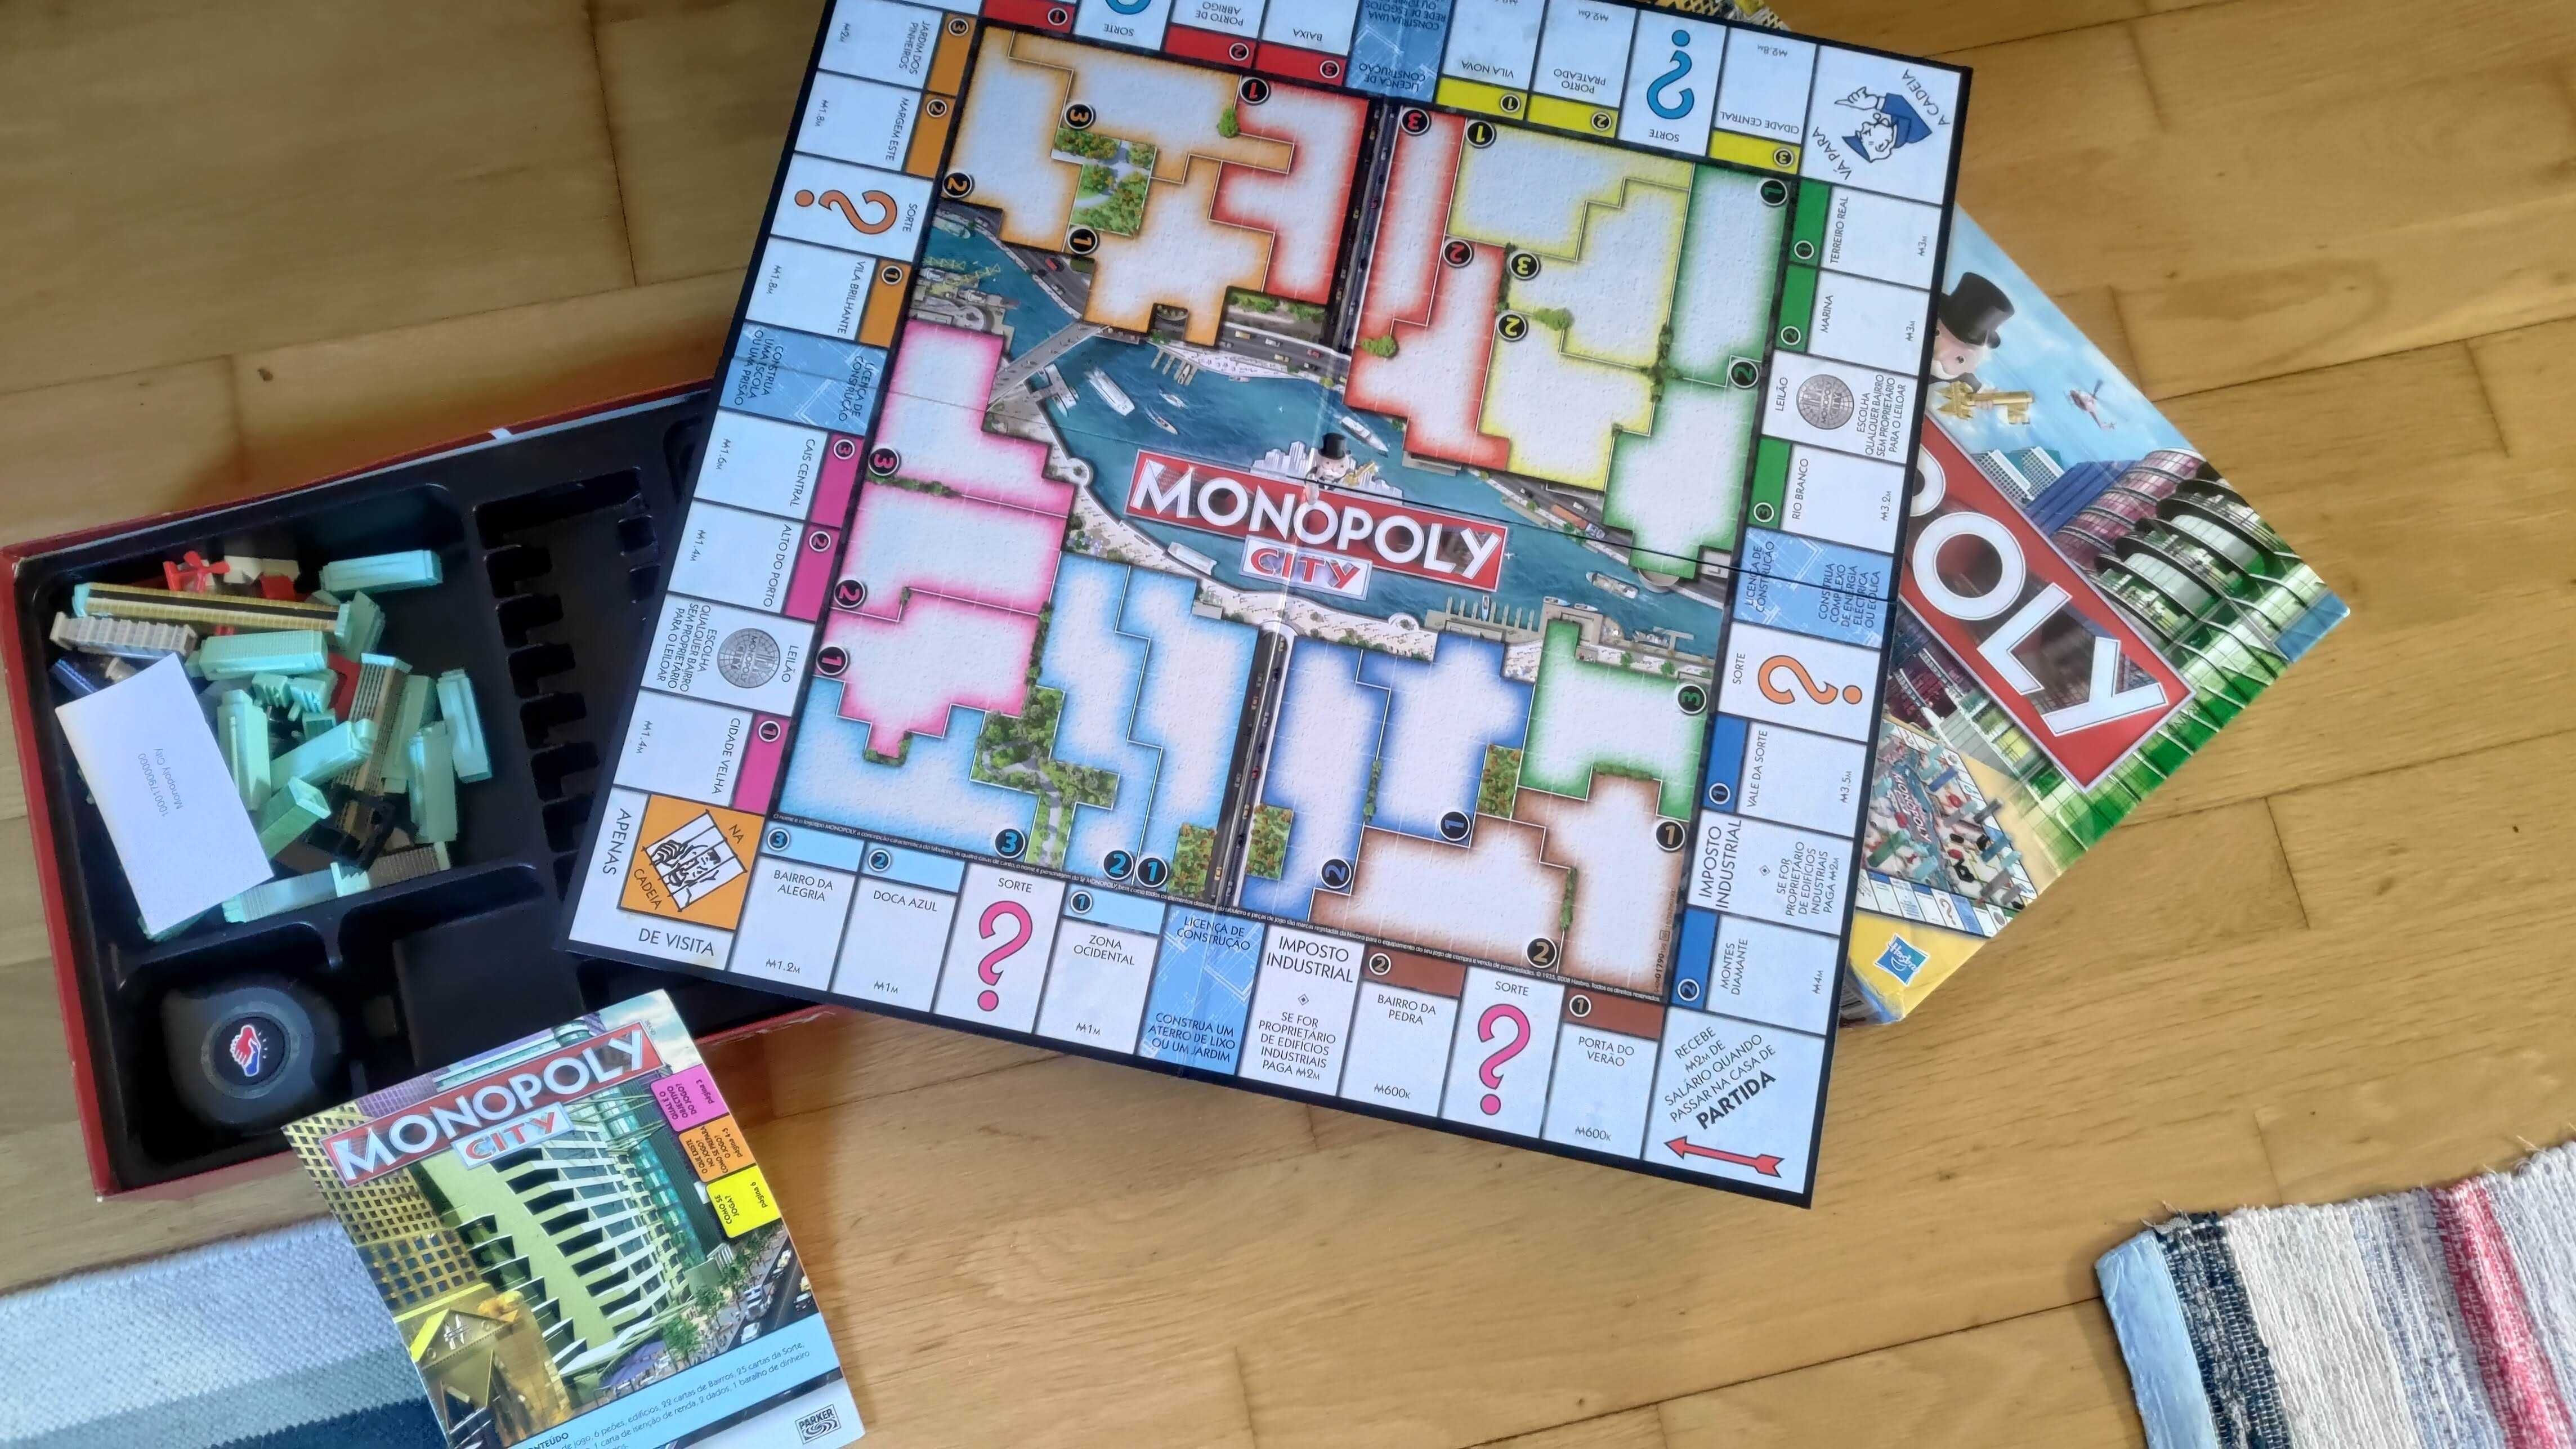 HASBRO Monopoly City Jogo de Tabuleiro Estratégia (em Estado Razoável)